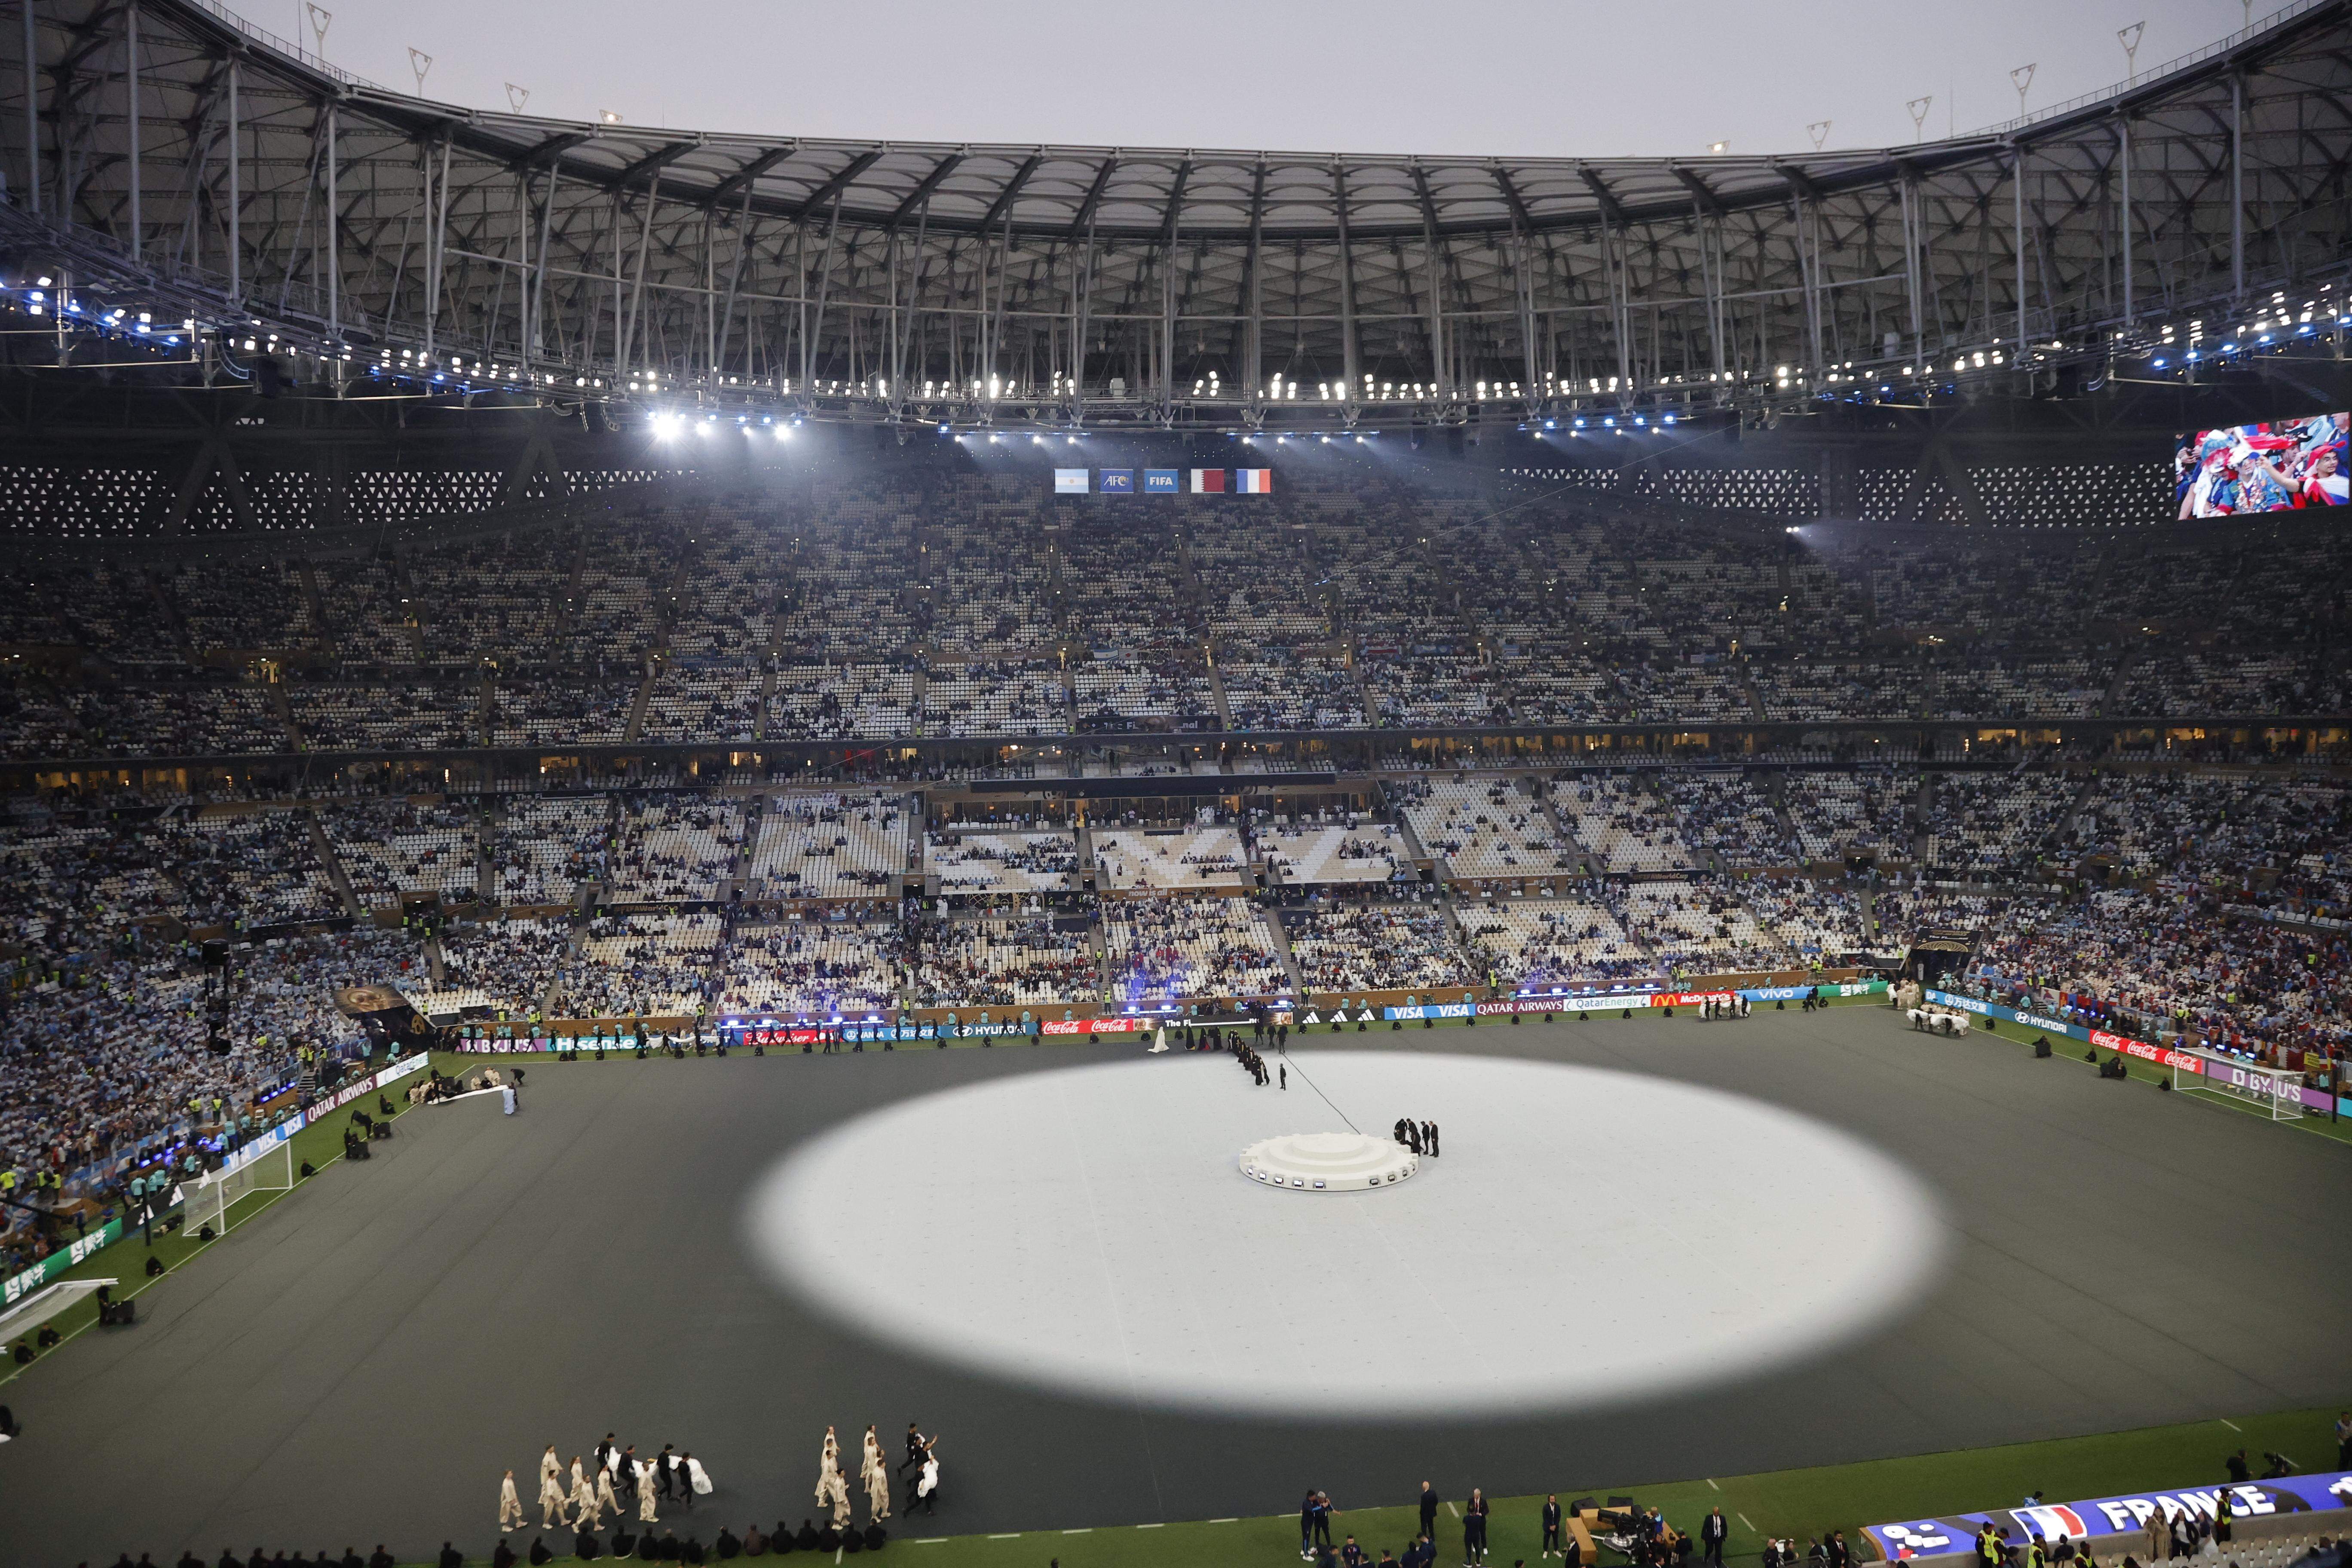 Que horas começa a cerimônia de encerramento da Copa do Mundo 2022